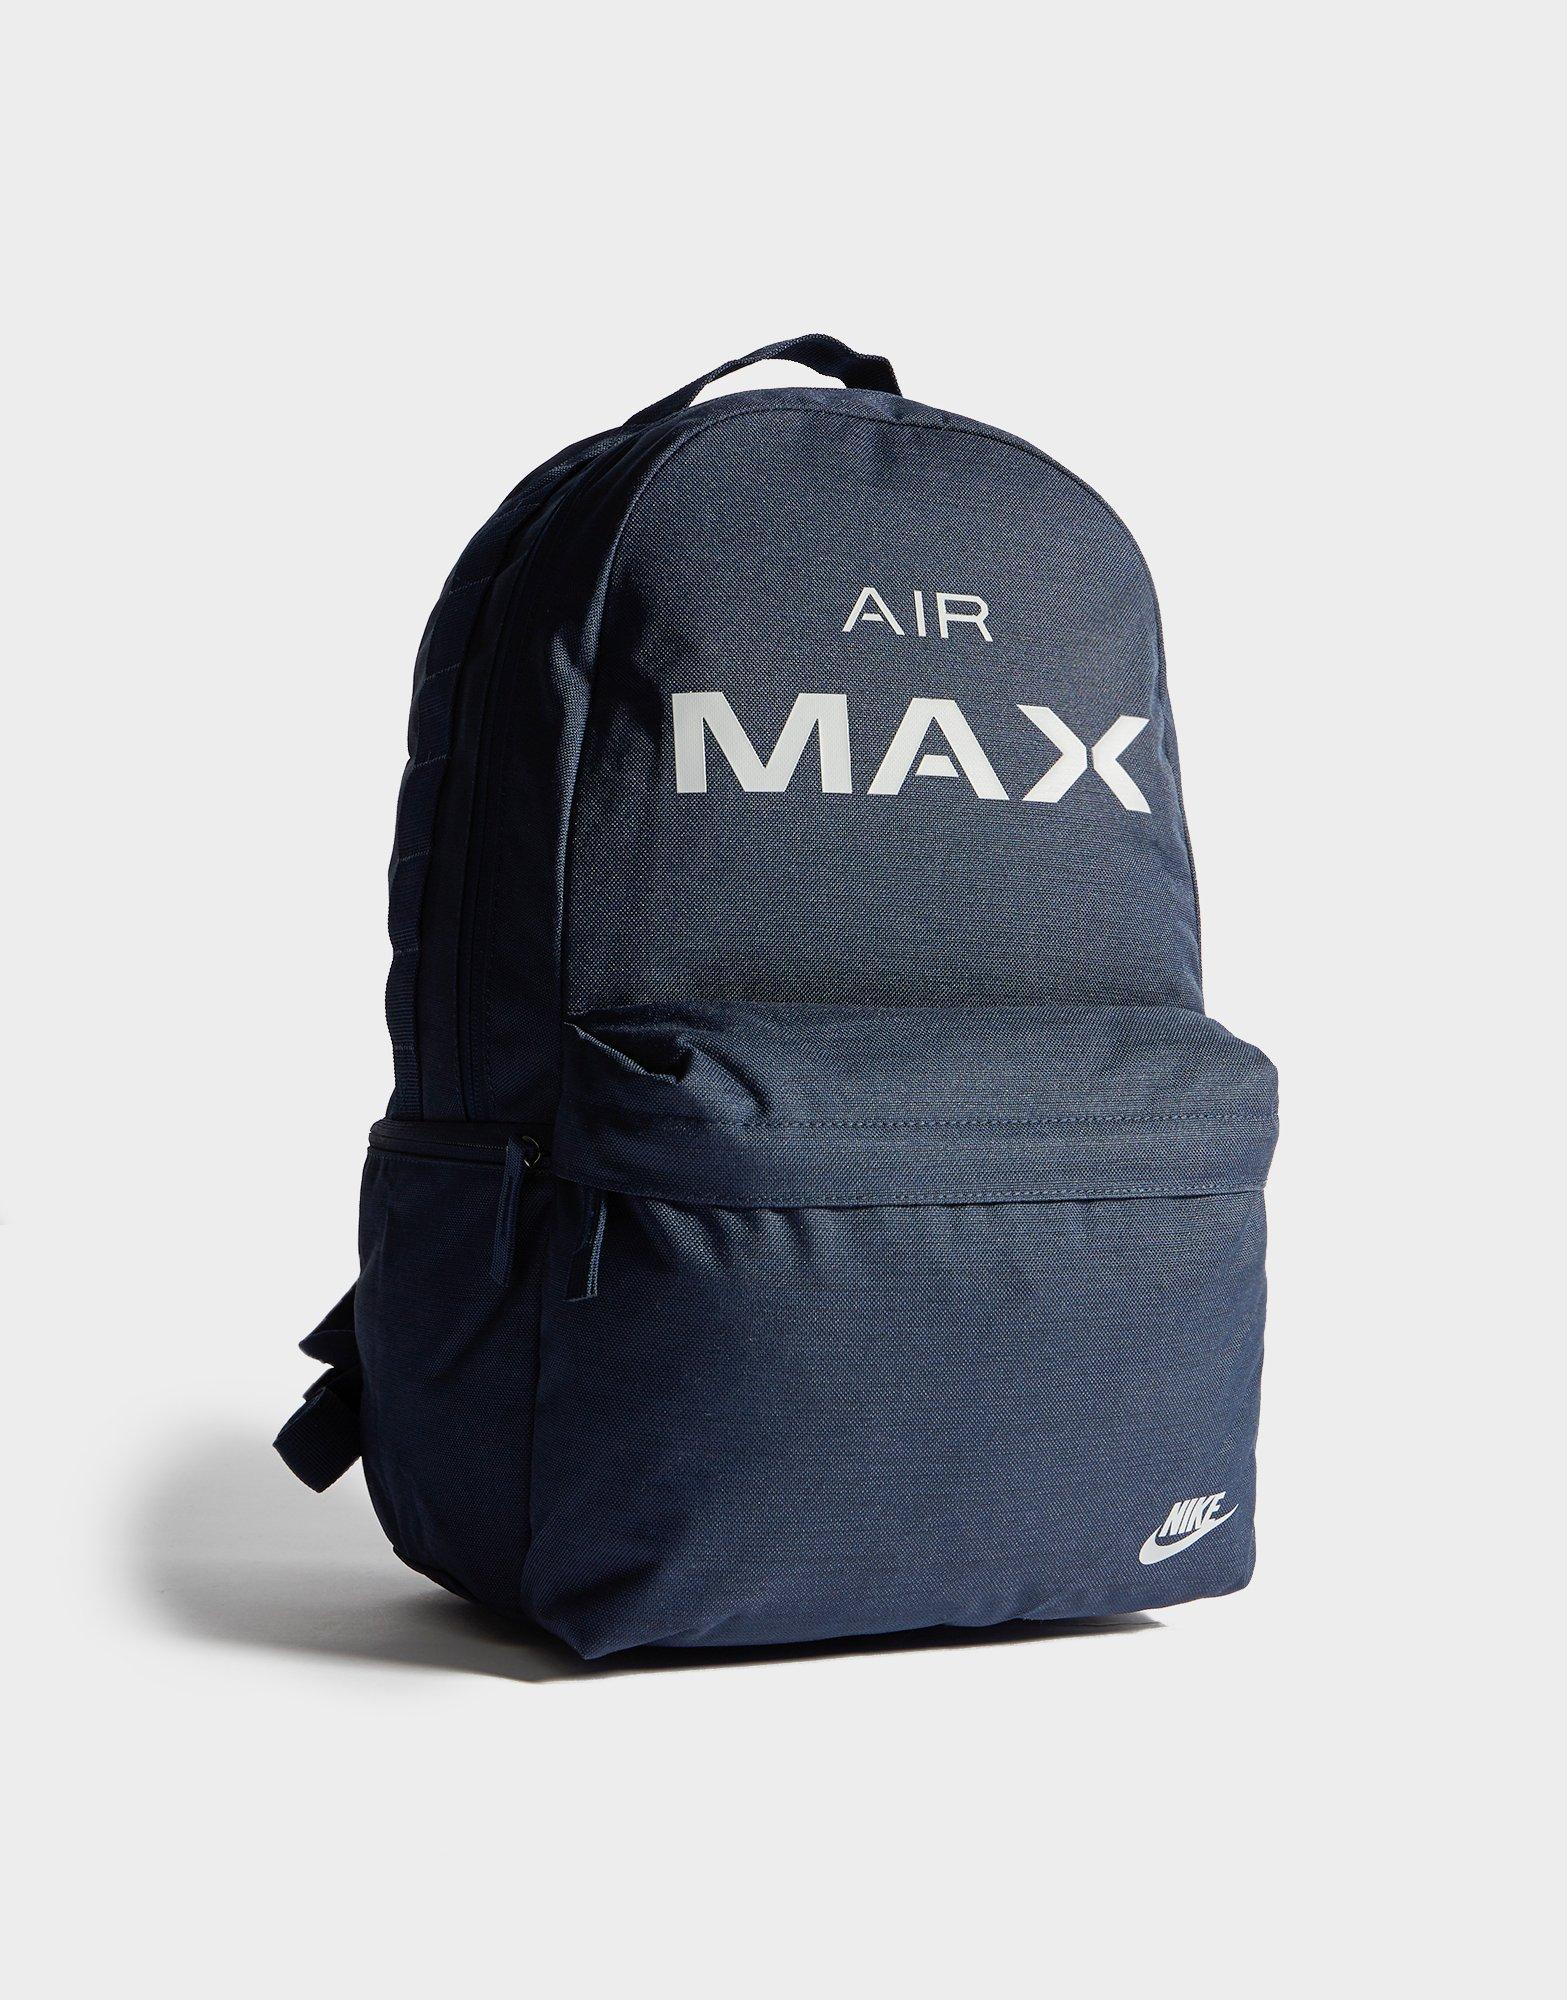 nike max air dark blue backpack